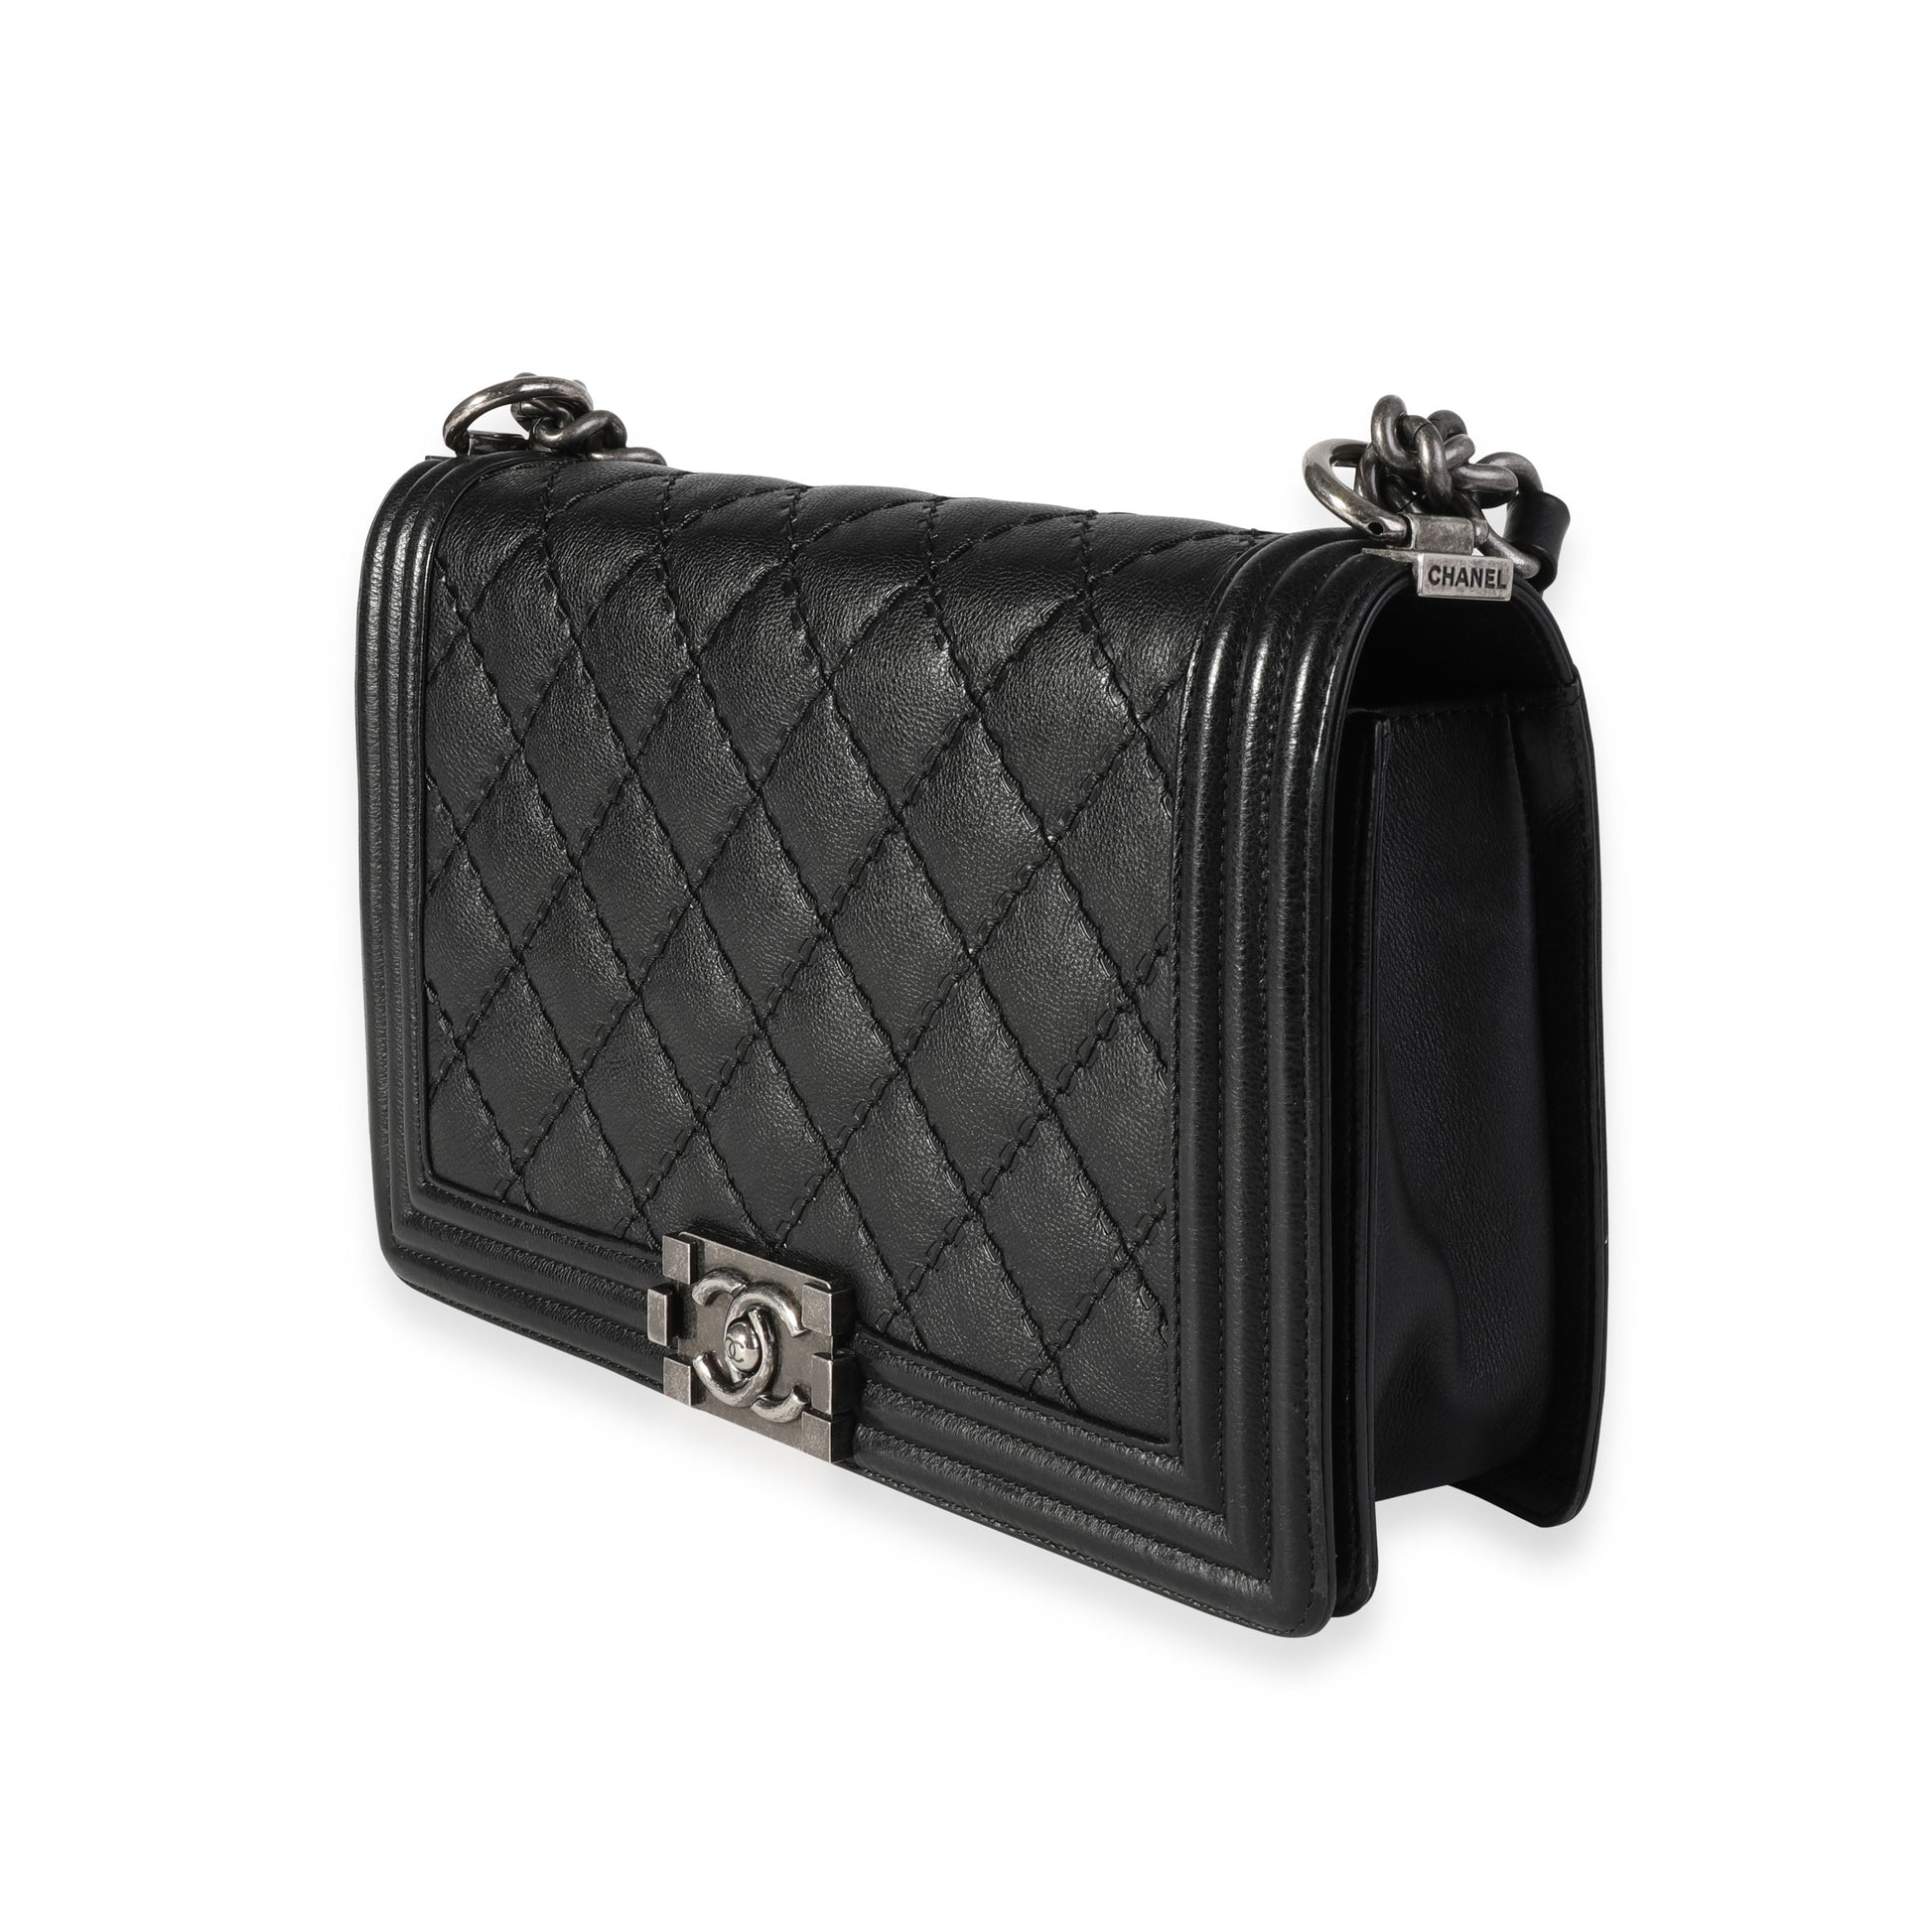 Chanel Black Quilted Whipstitch Calfskin New Medium Boy Bag